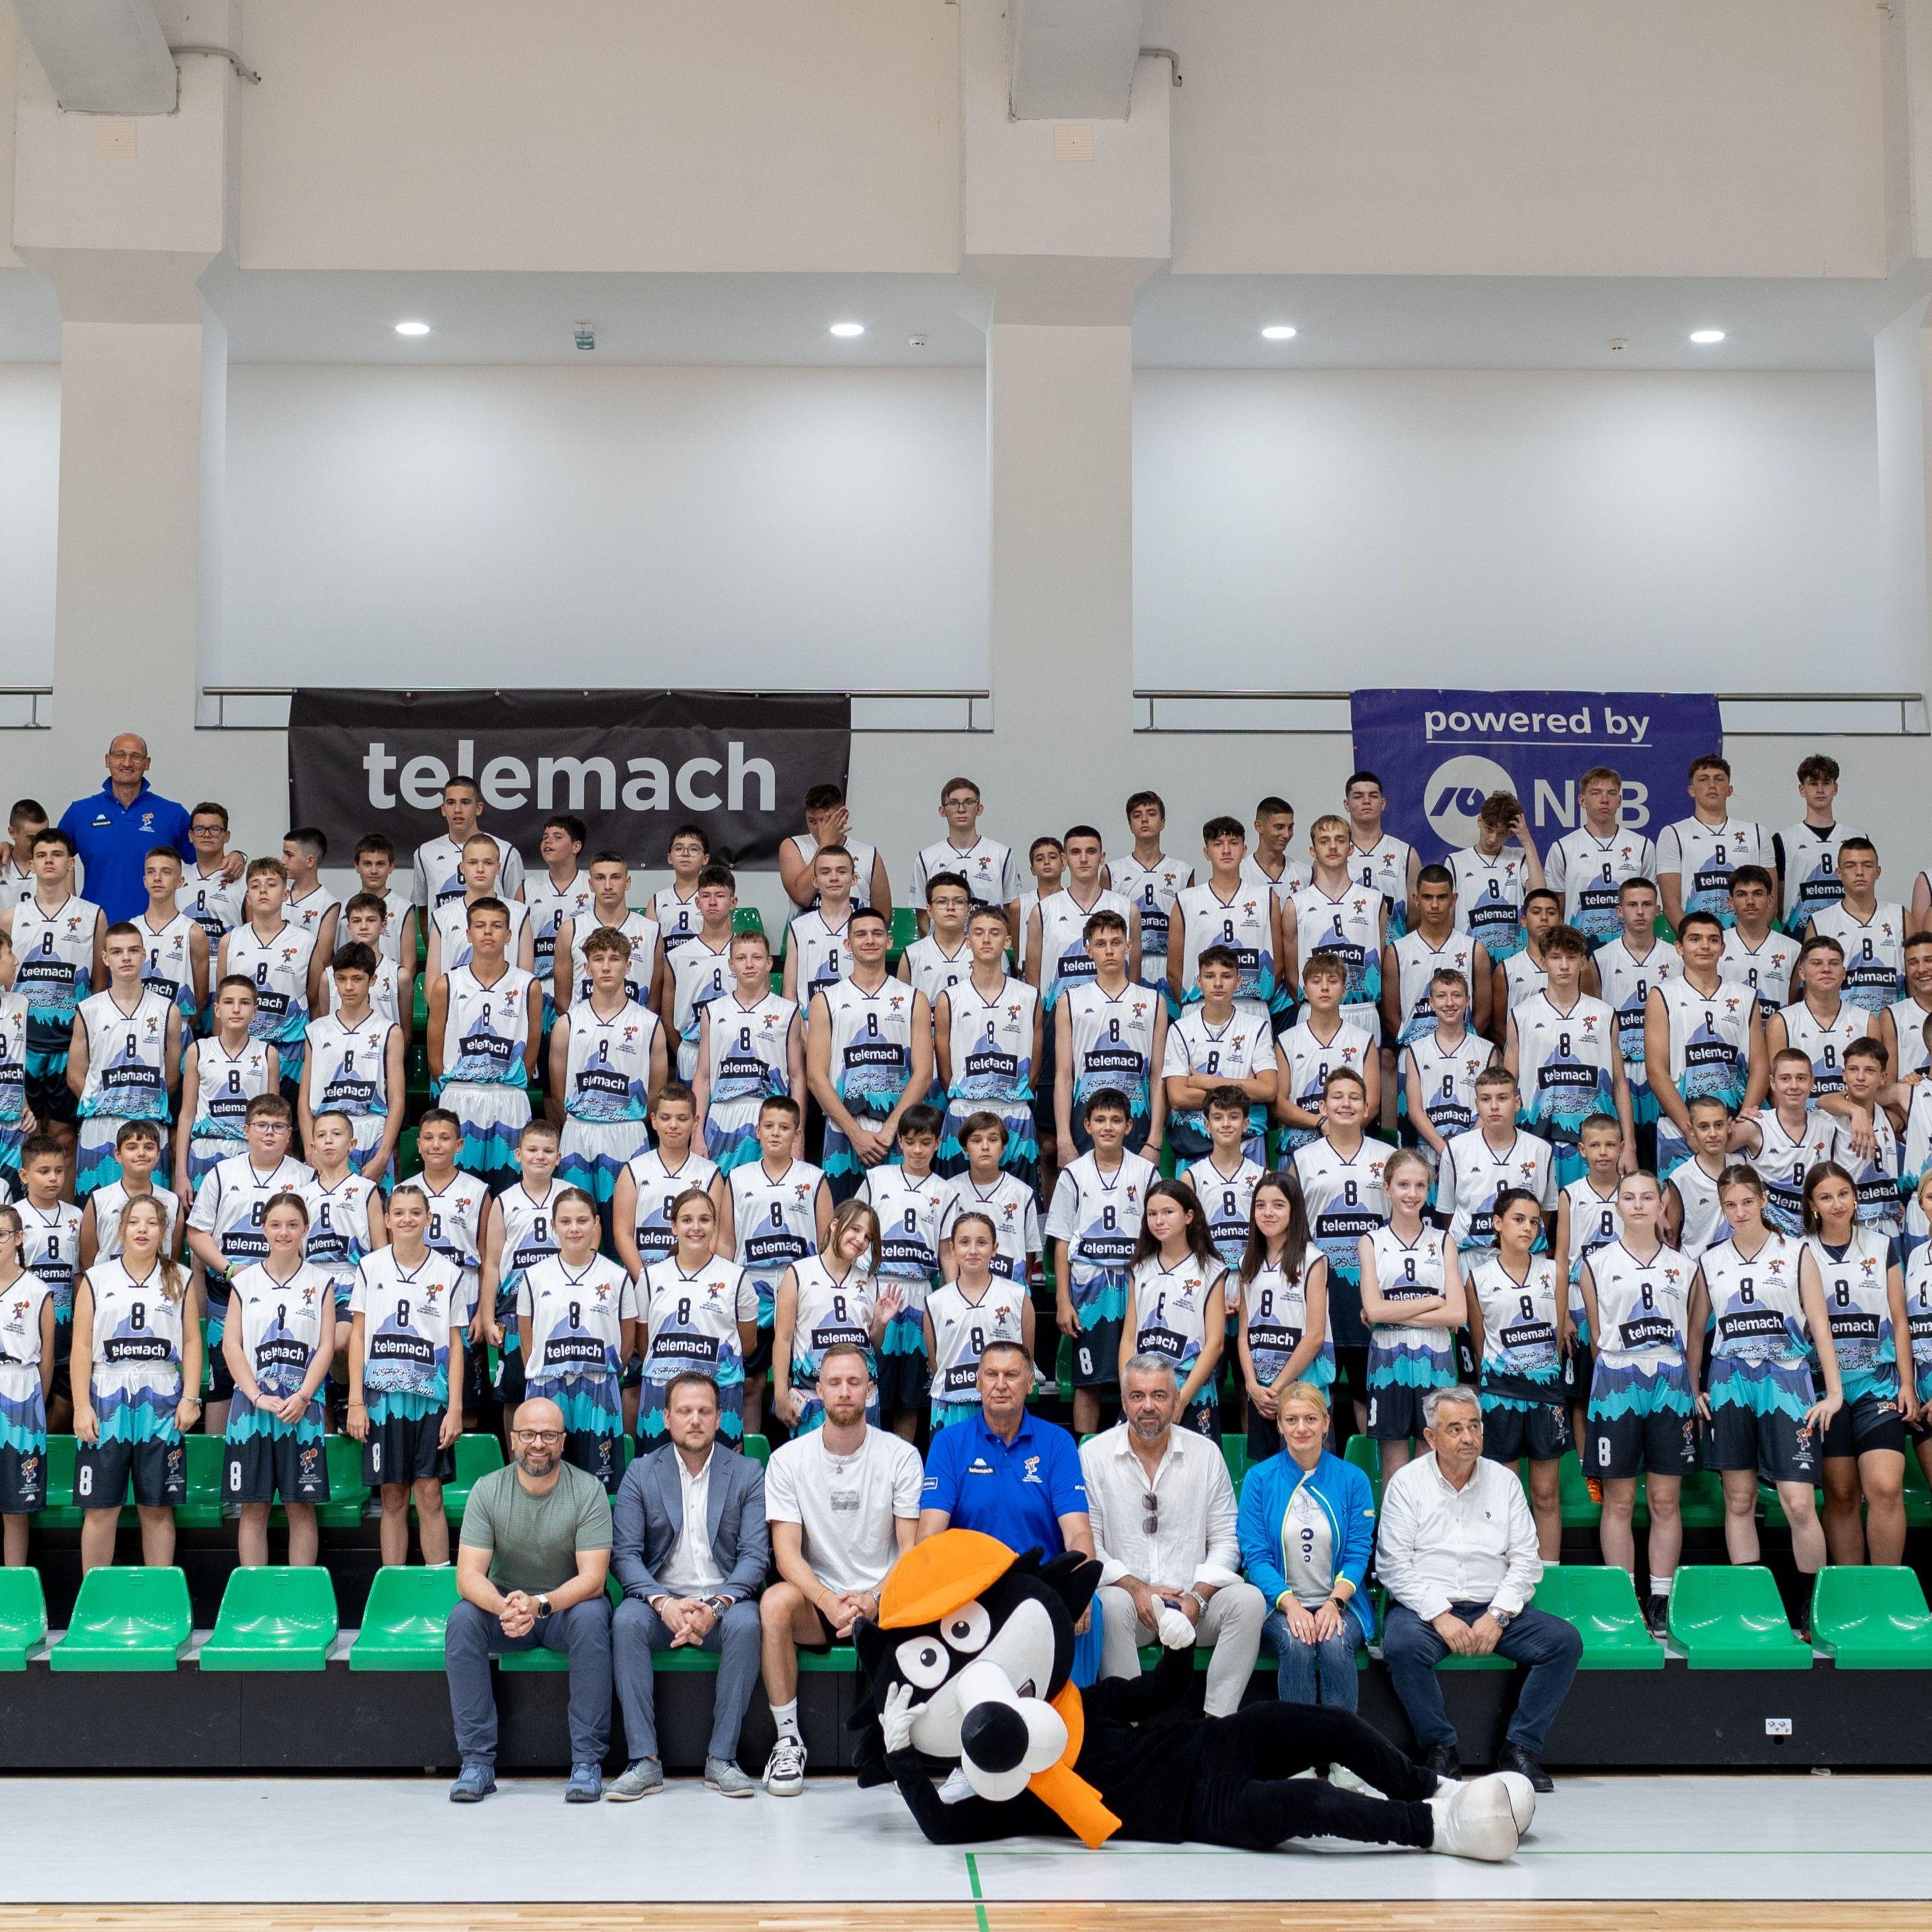 Počeo 8. Telemach košarkaški kamp na Bjelašnici: Šest dana treninga, zabave i druženja za 130 mališana iz deset zemalja